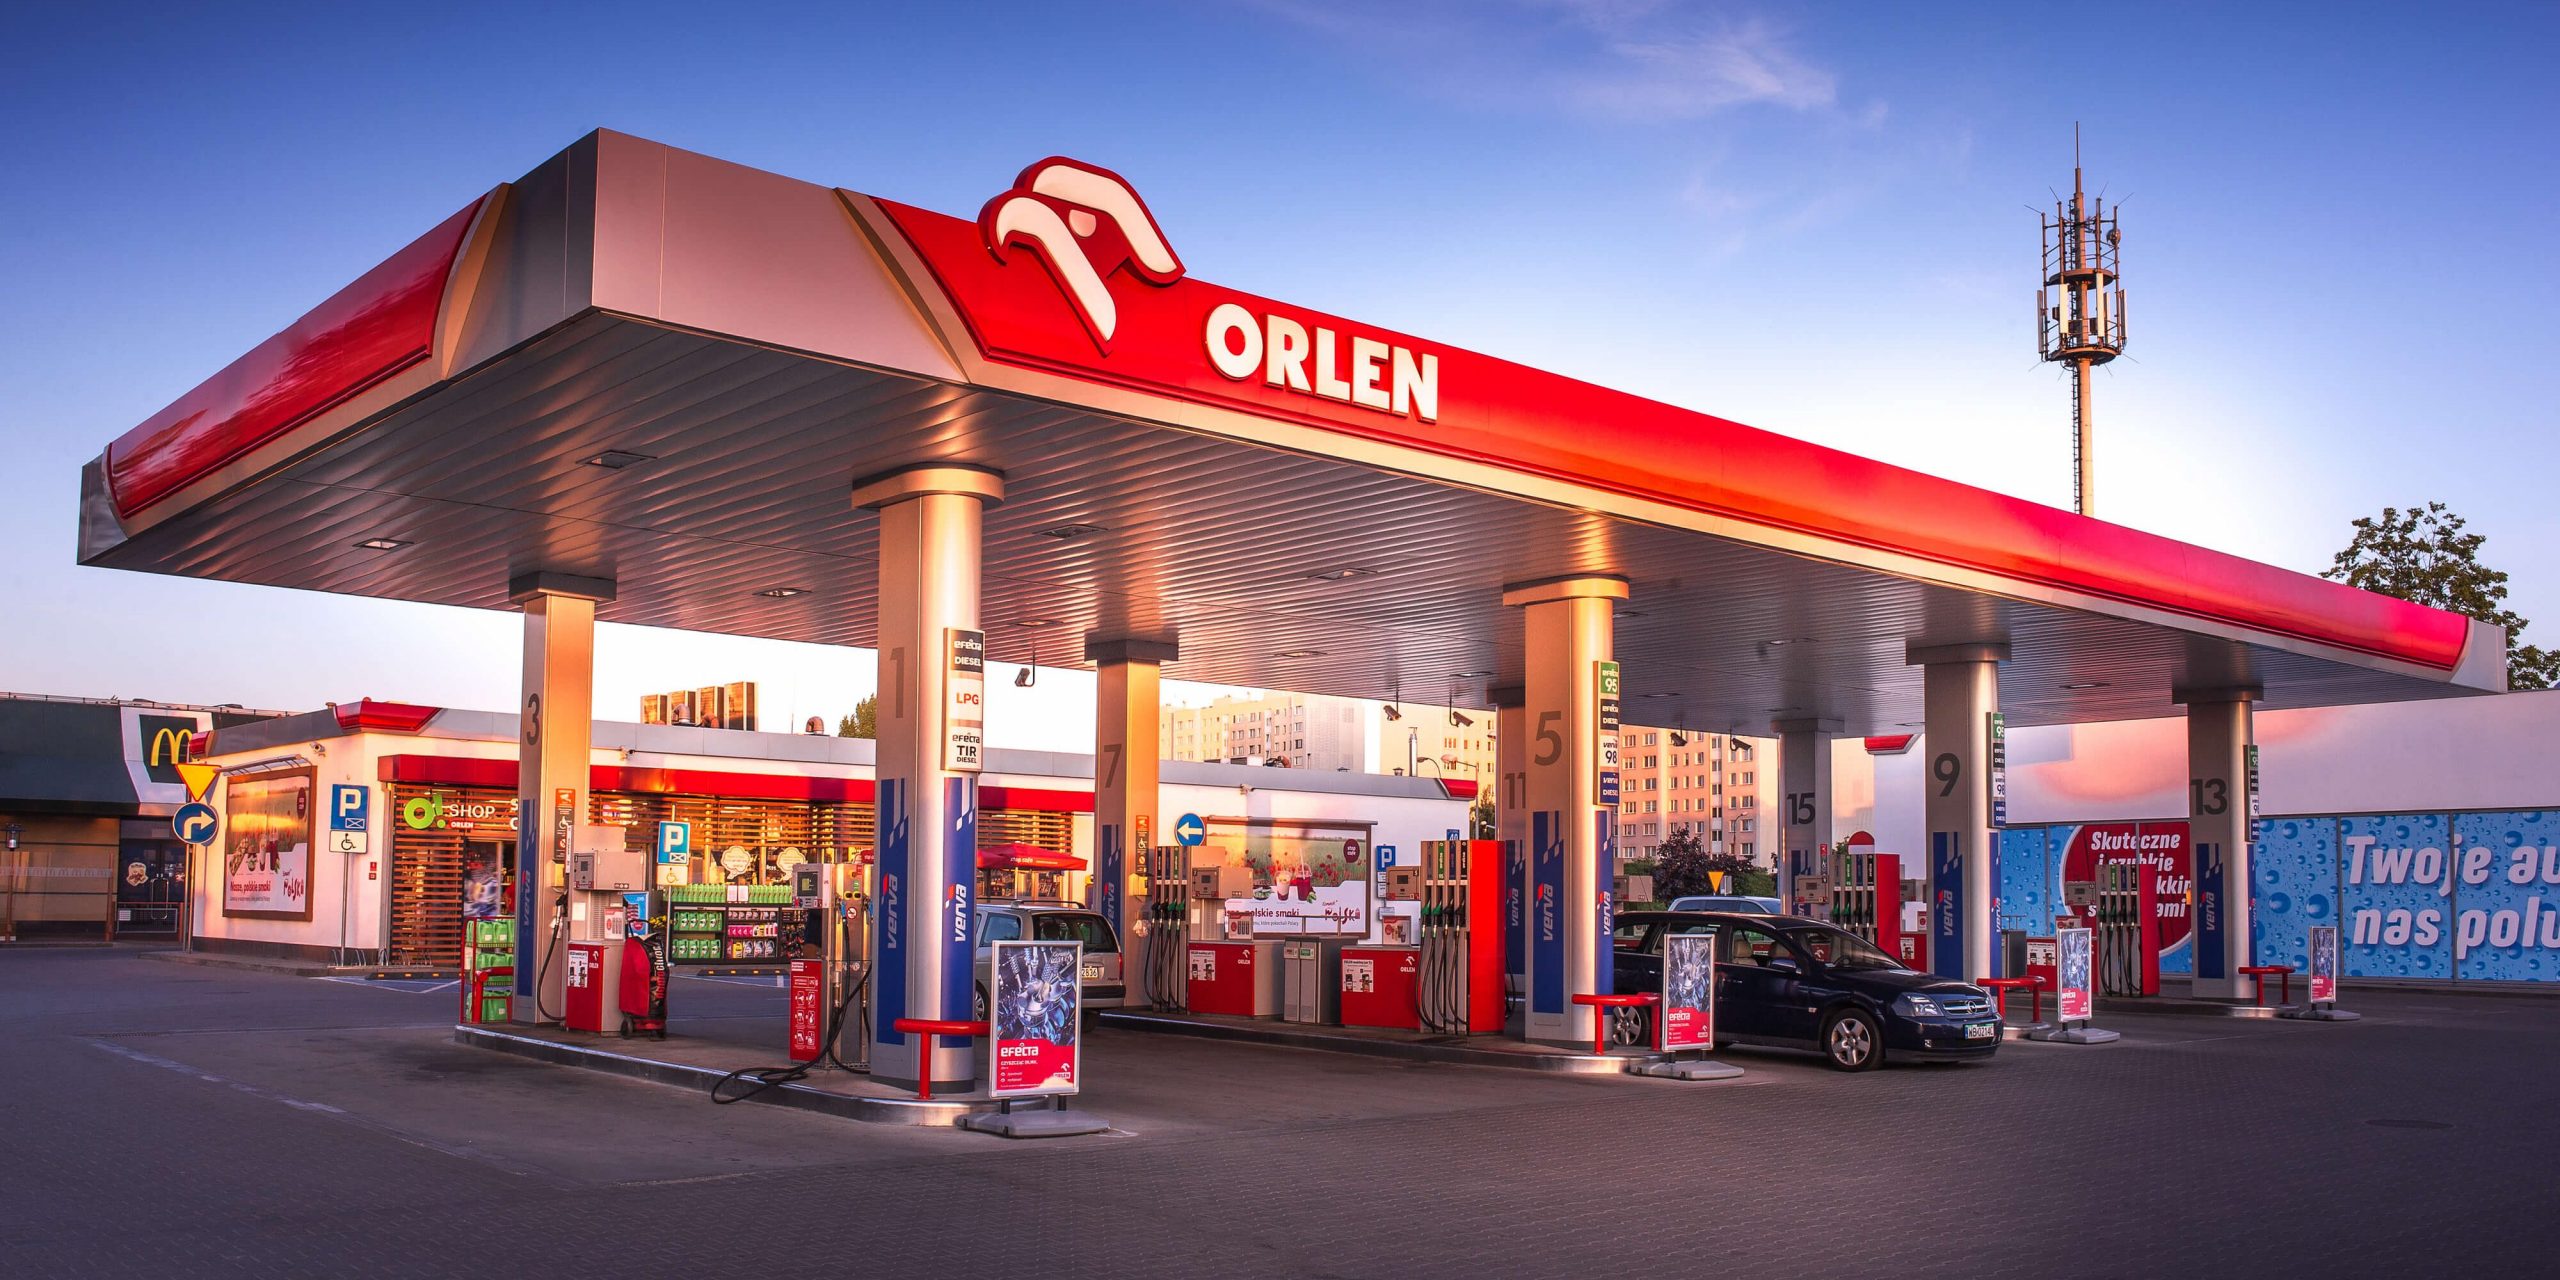 Orlen este din nou cea mai mare companie din Europa Centrală și de Est [Ranking]